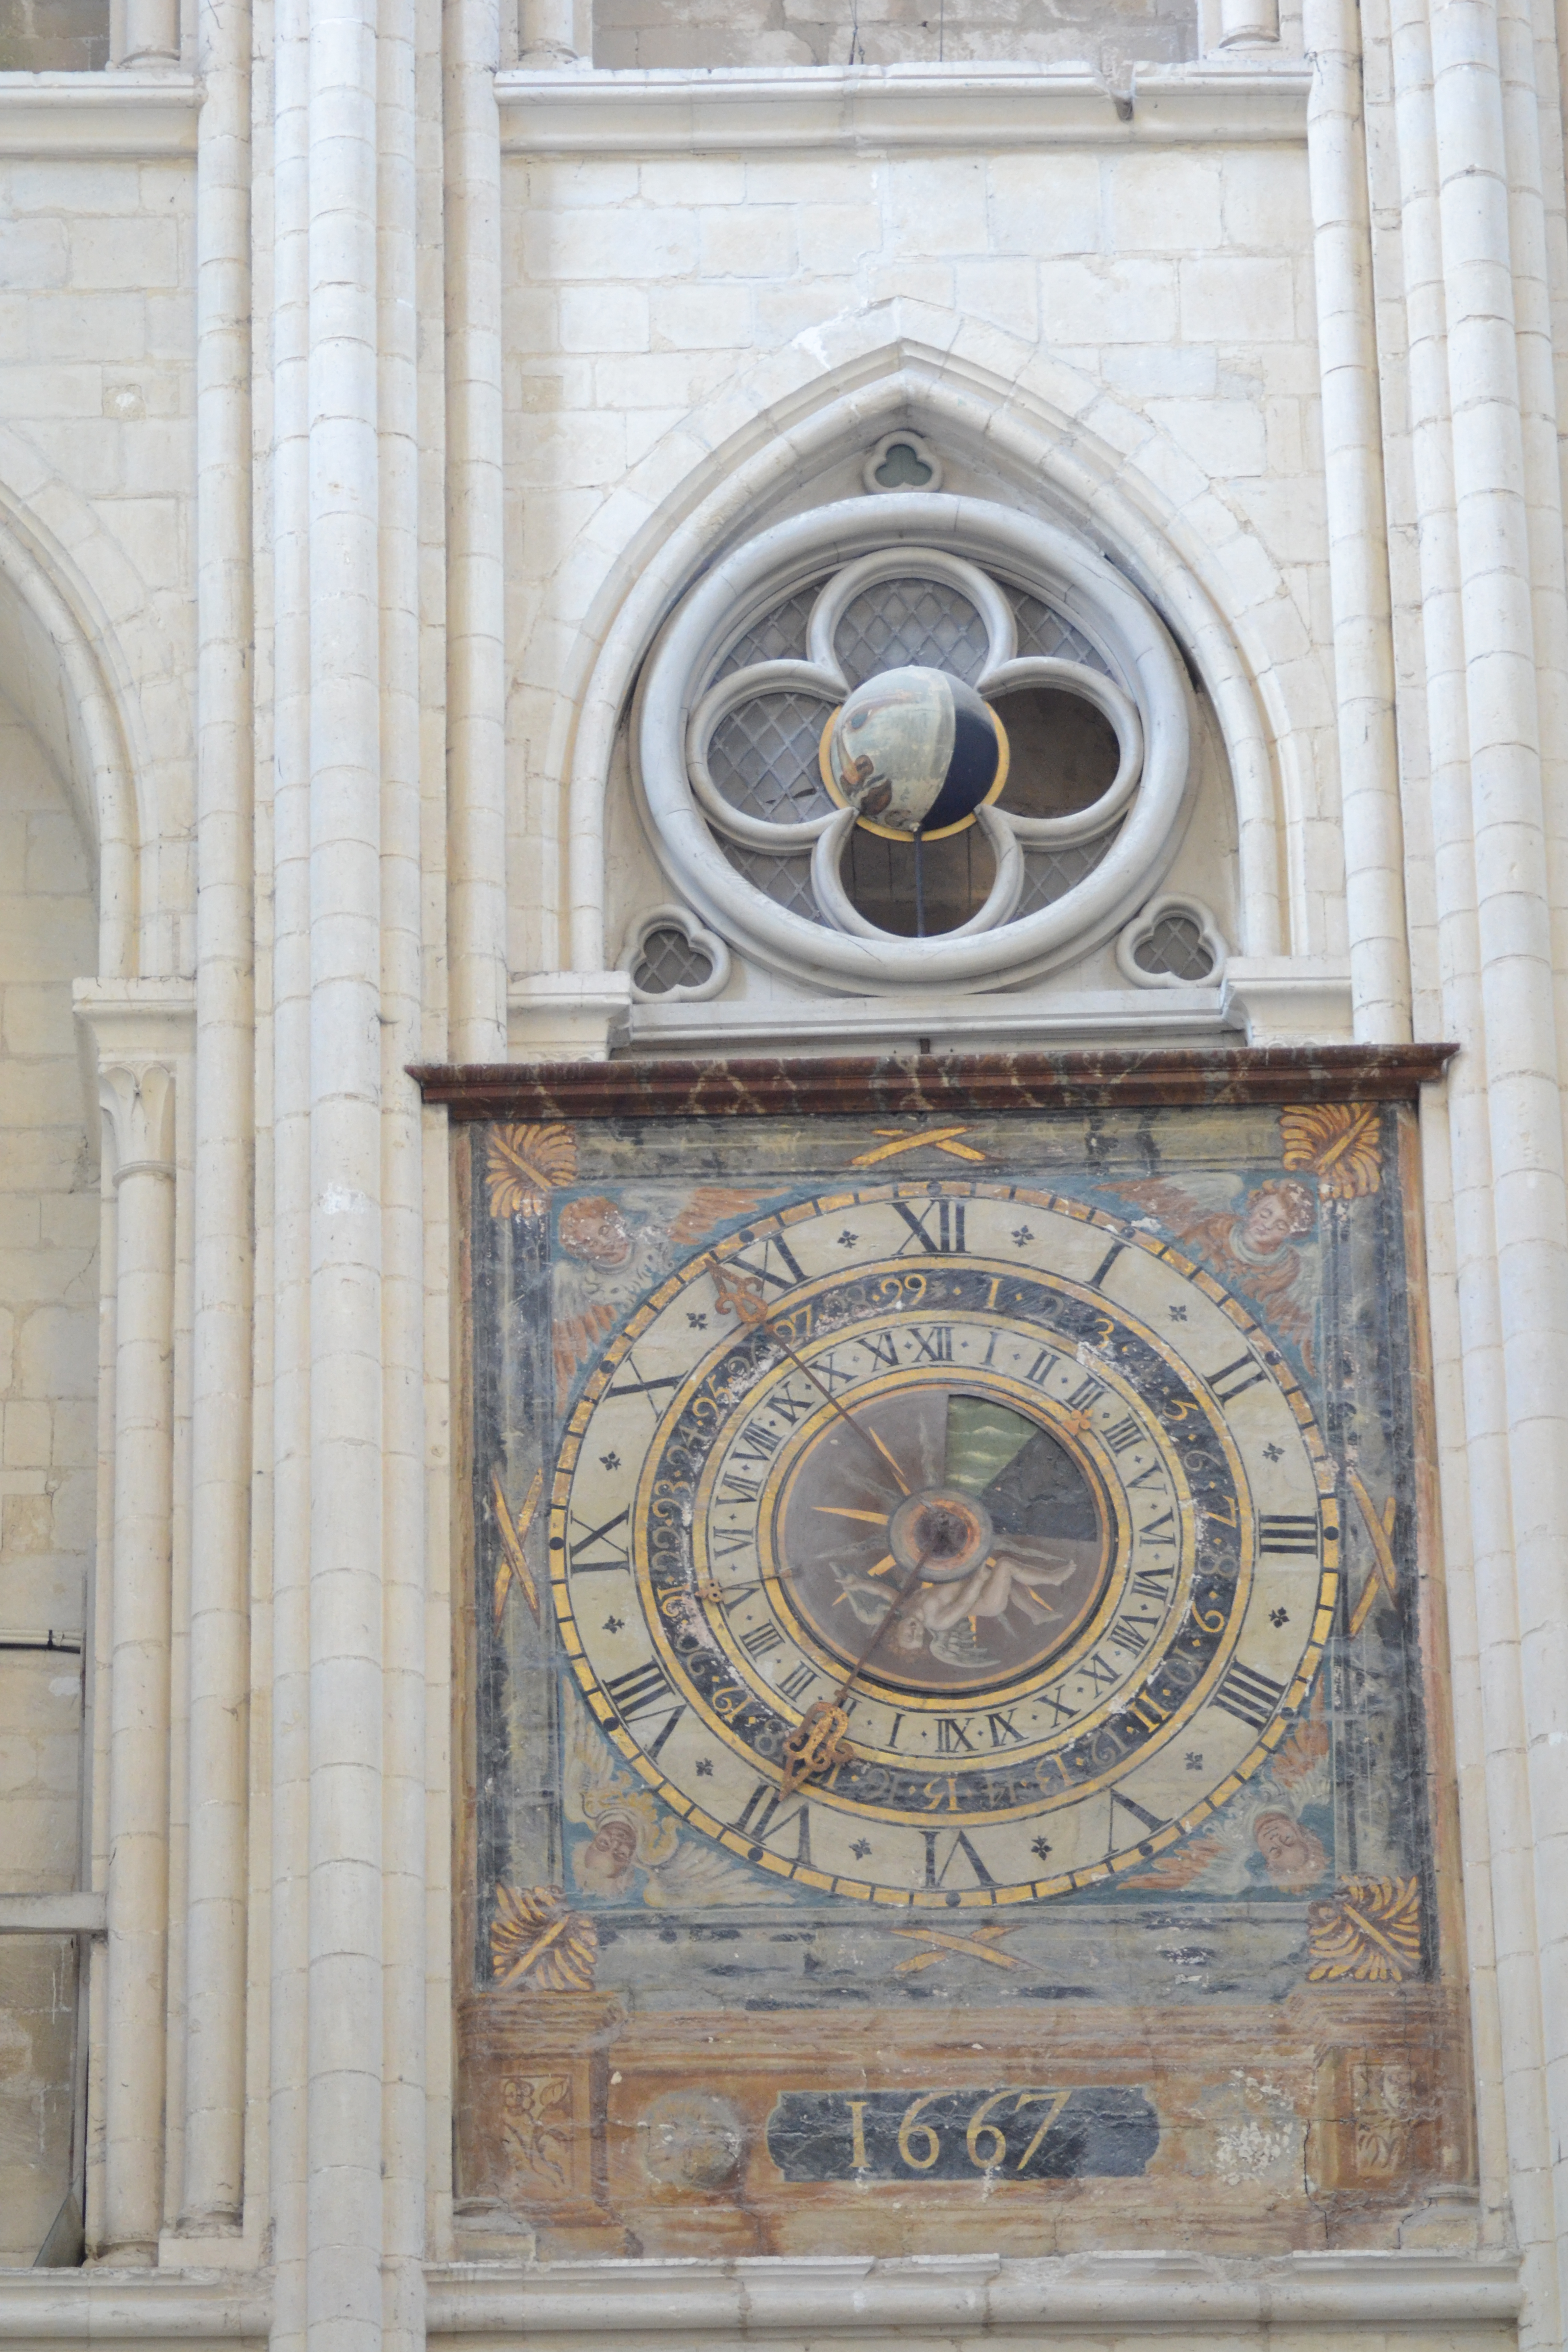 l’horloge astronomique réalisée par l’artisan horloger Antoine Beyssac en 1667 ; elle indique l’heure, le calendrier, les saisons, les phases de lune et les marées.